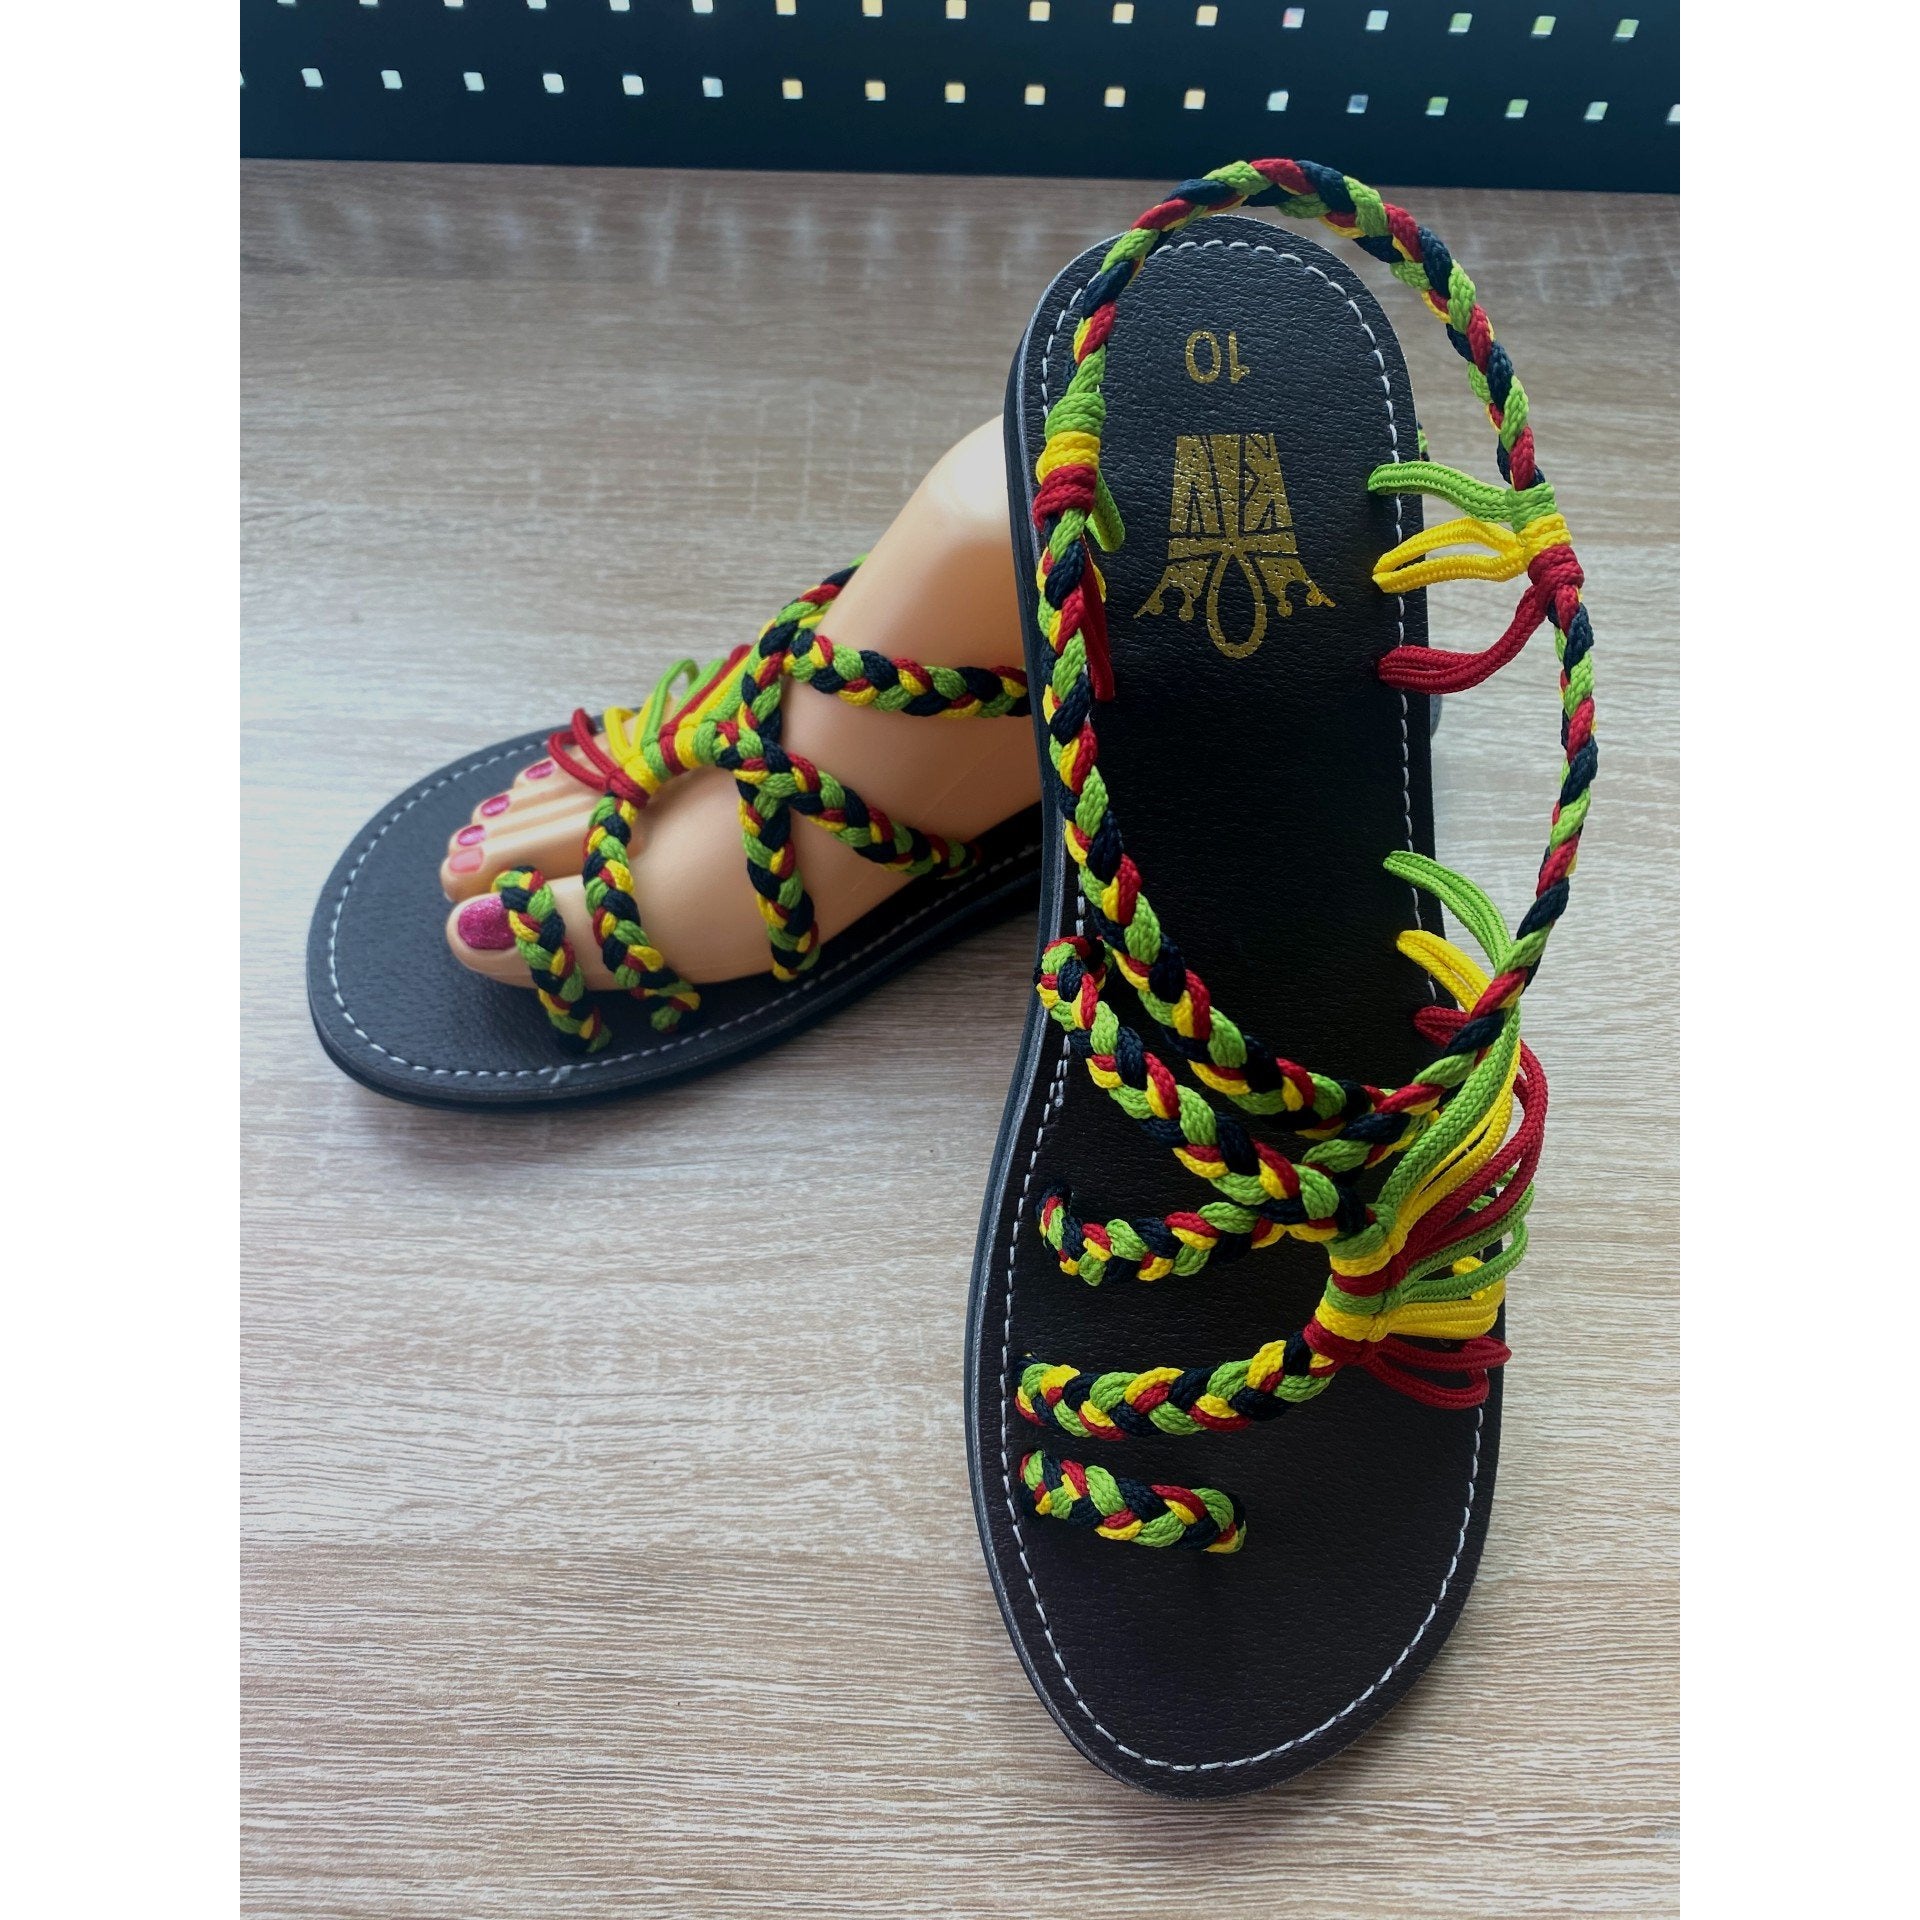 Shoes - Braided Sandal Reggae